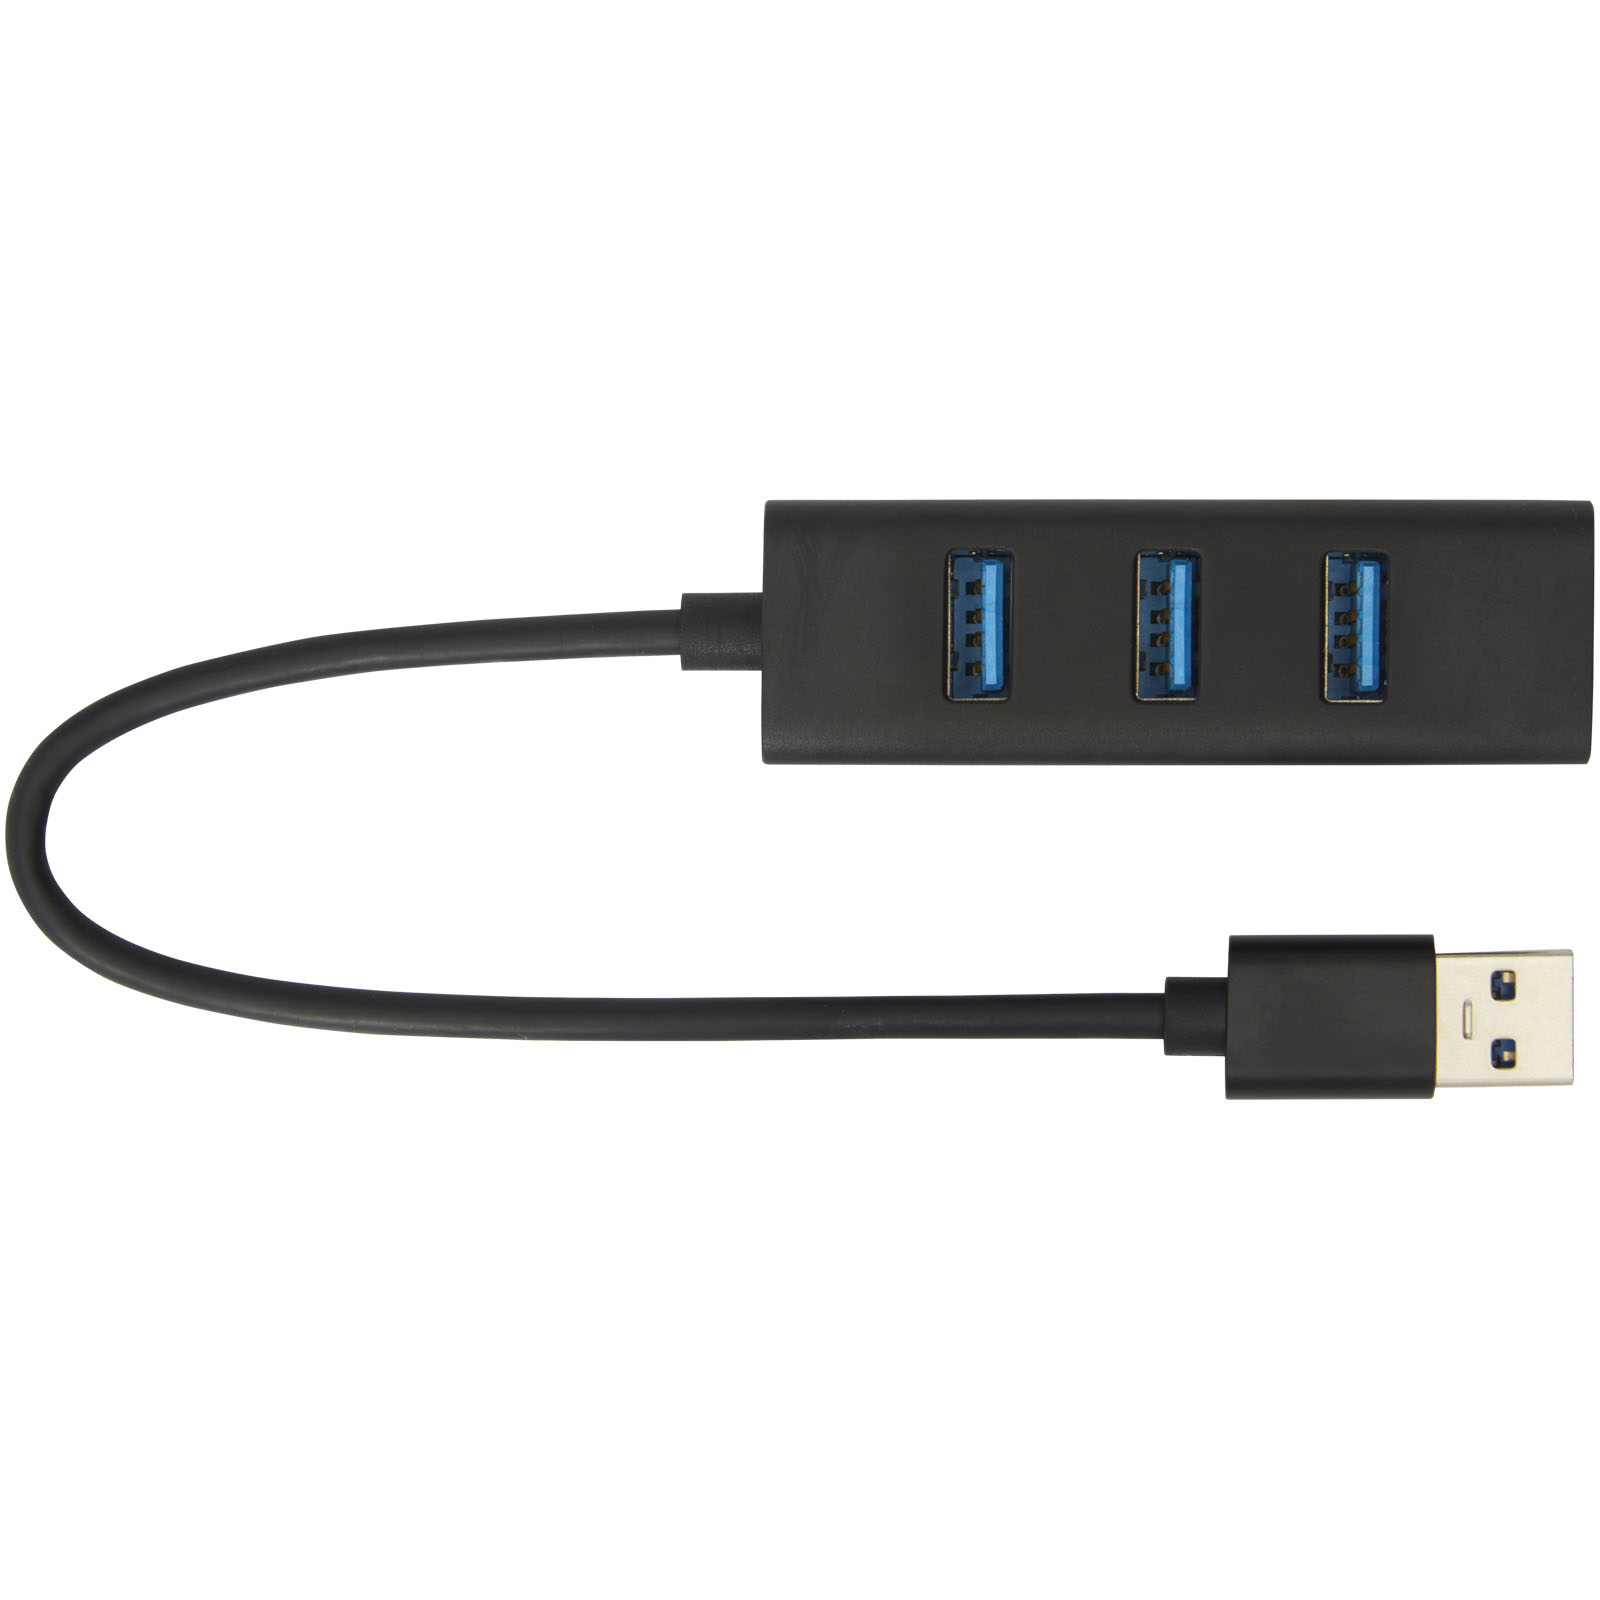 Hubs USB publicitaires - Hub USB 3.0 ADAPT en aluminium  - 2